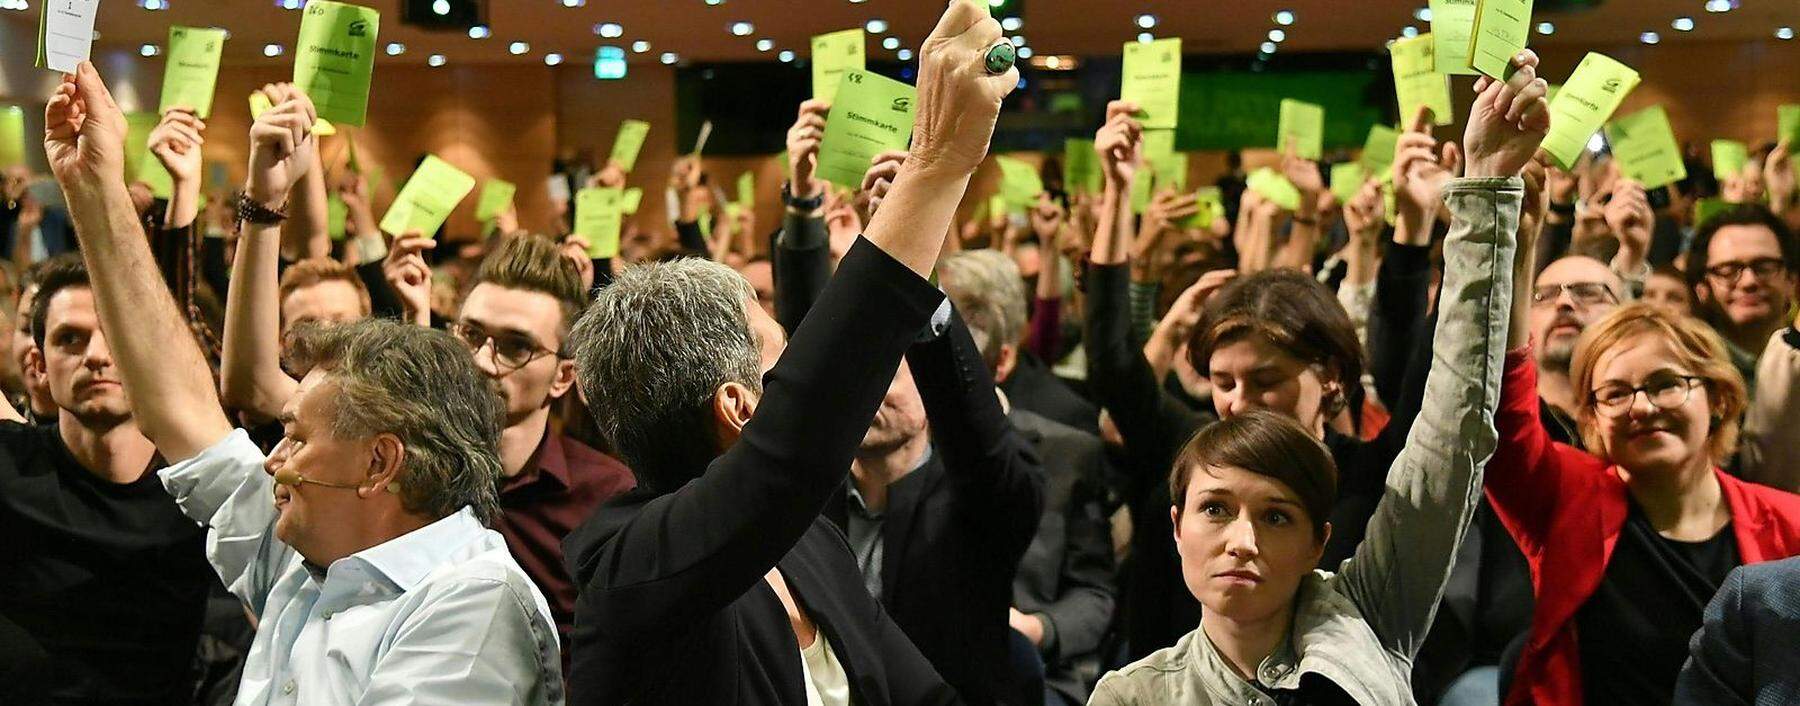 Am 4. Jänner stimmte der Bundeskongress der Grünen in Salzburg über das Koalitionsabkommen mit der ÖVP ab. In der ersten Reihe: Bundessprecher Werner Kogler, Ulrike Lunacek und Sigrid Maurer.